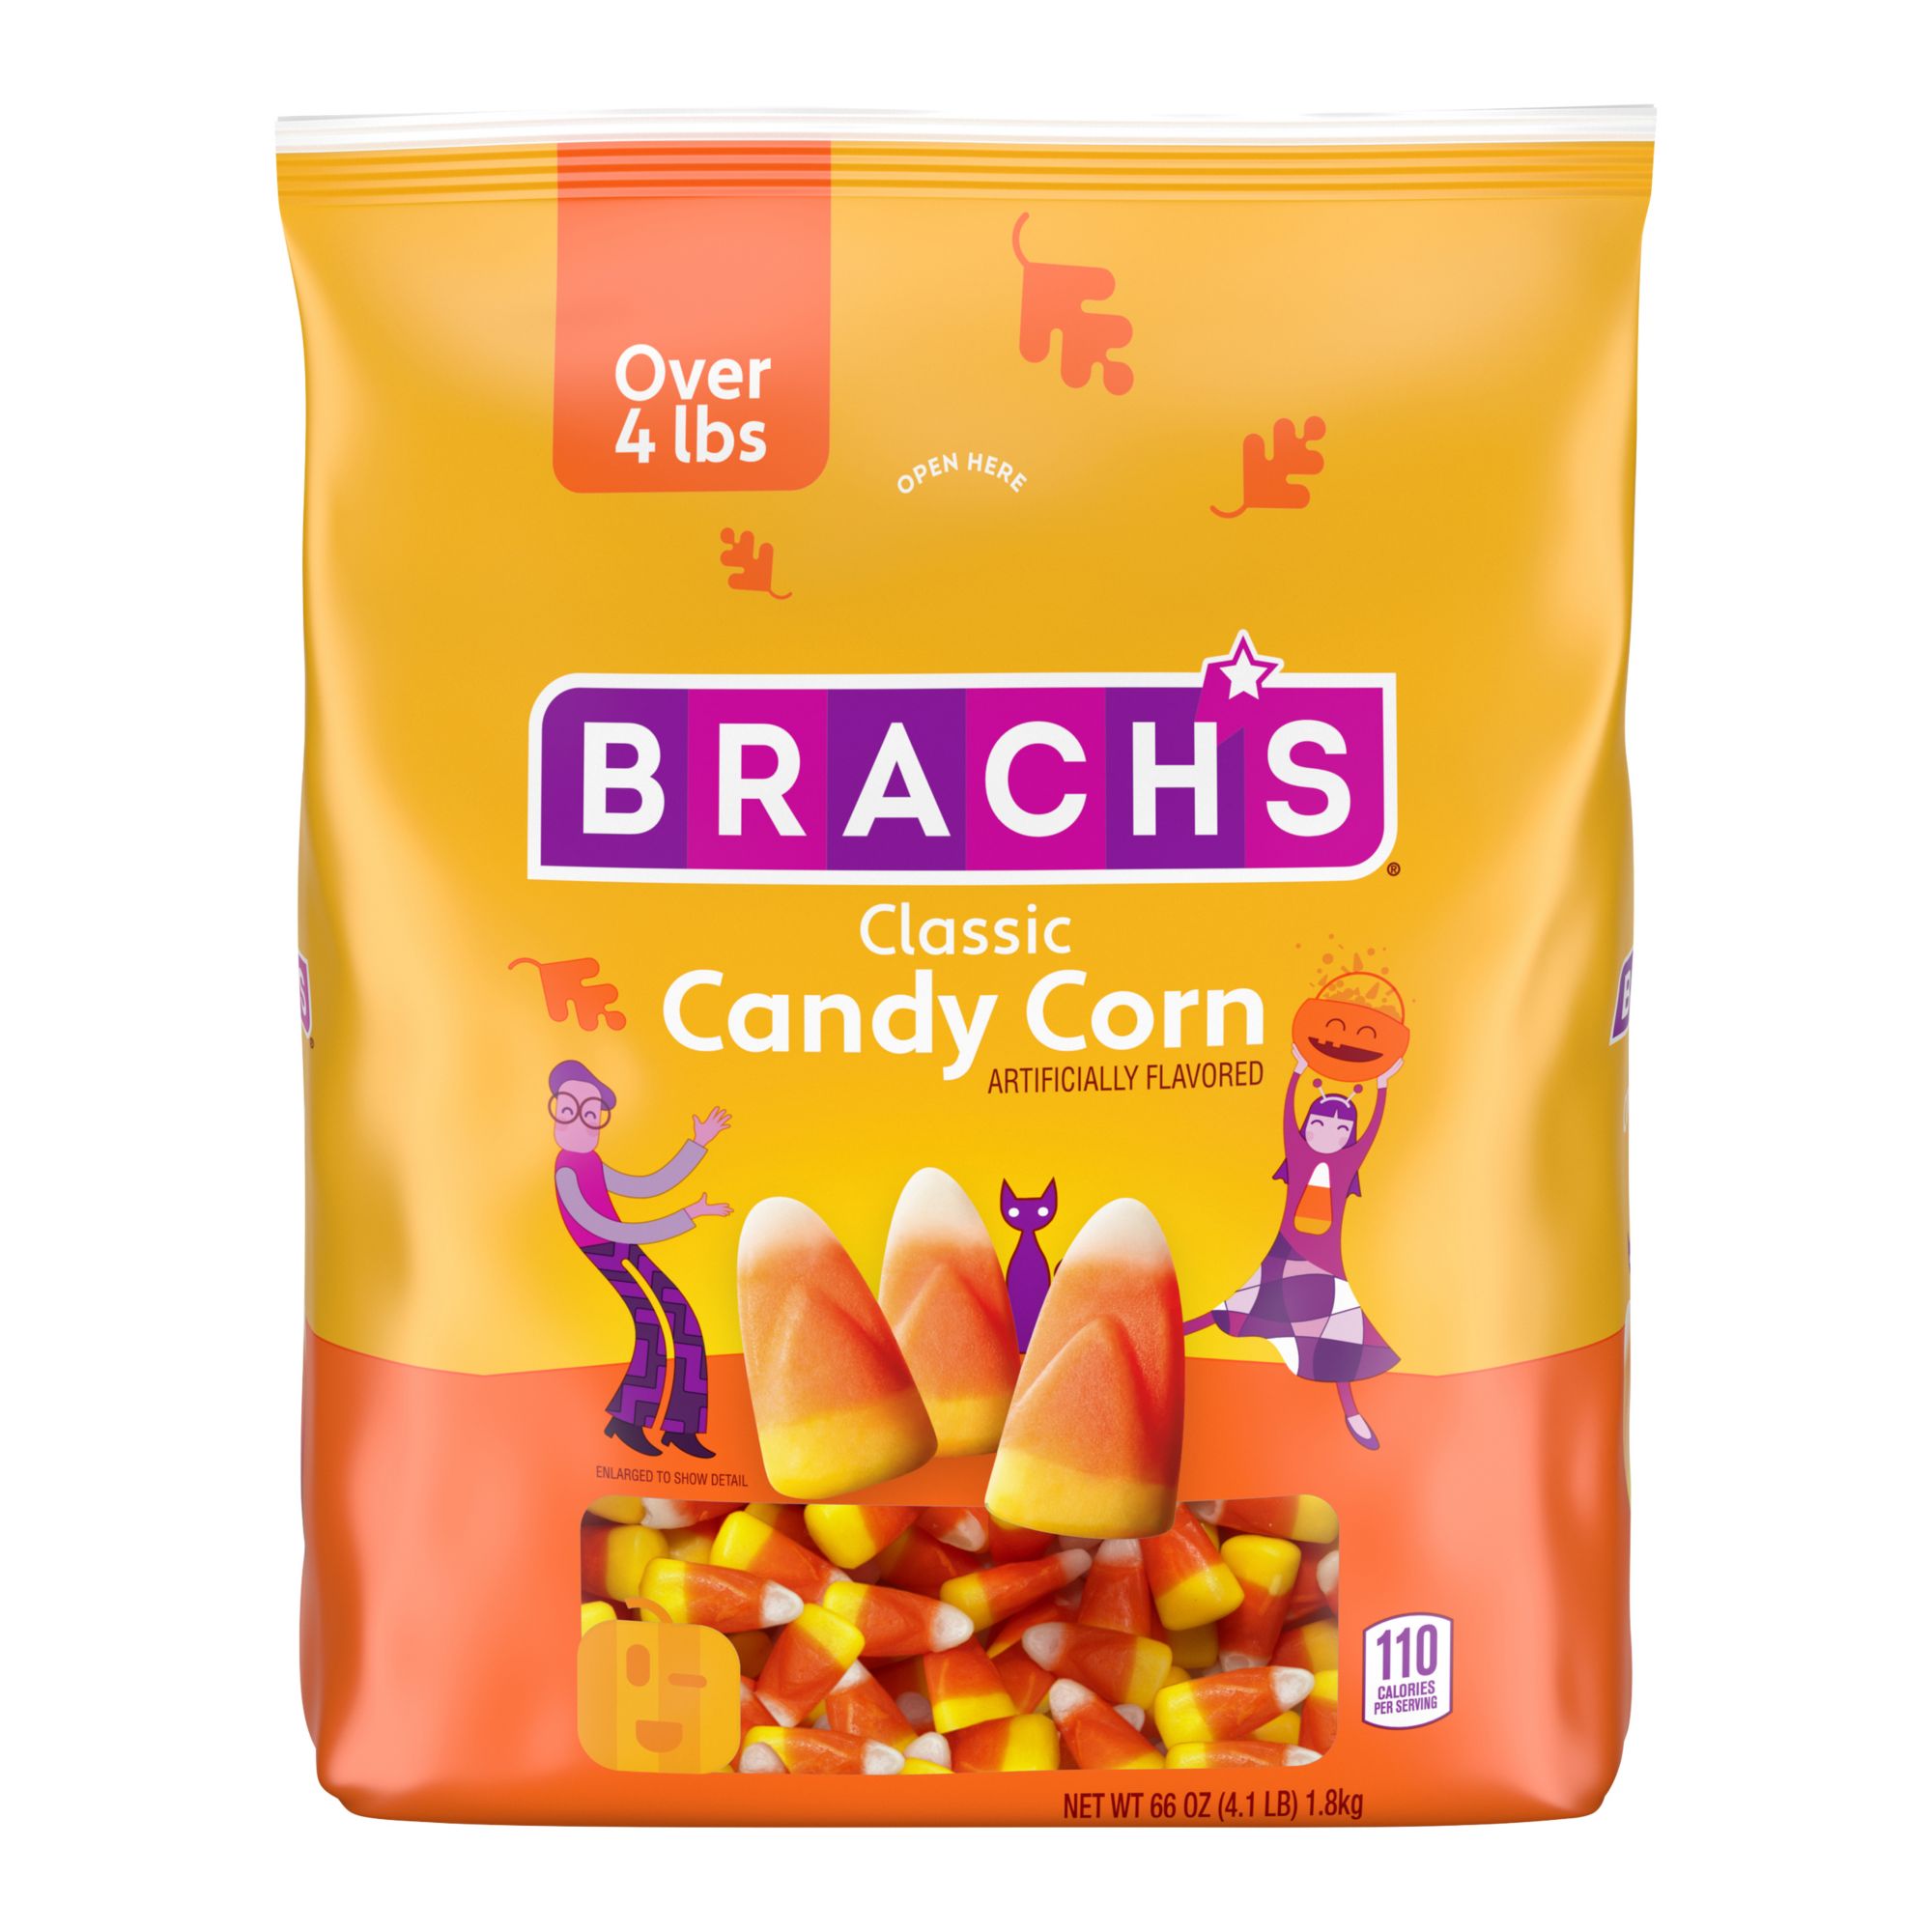 Brach's, Accents